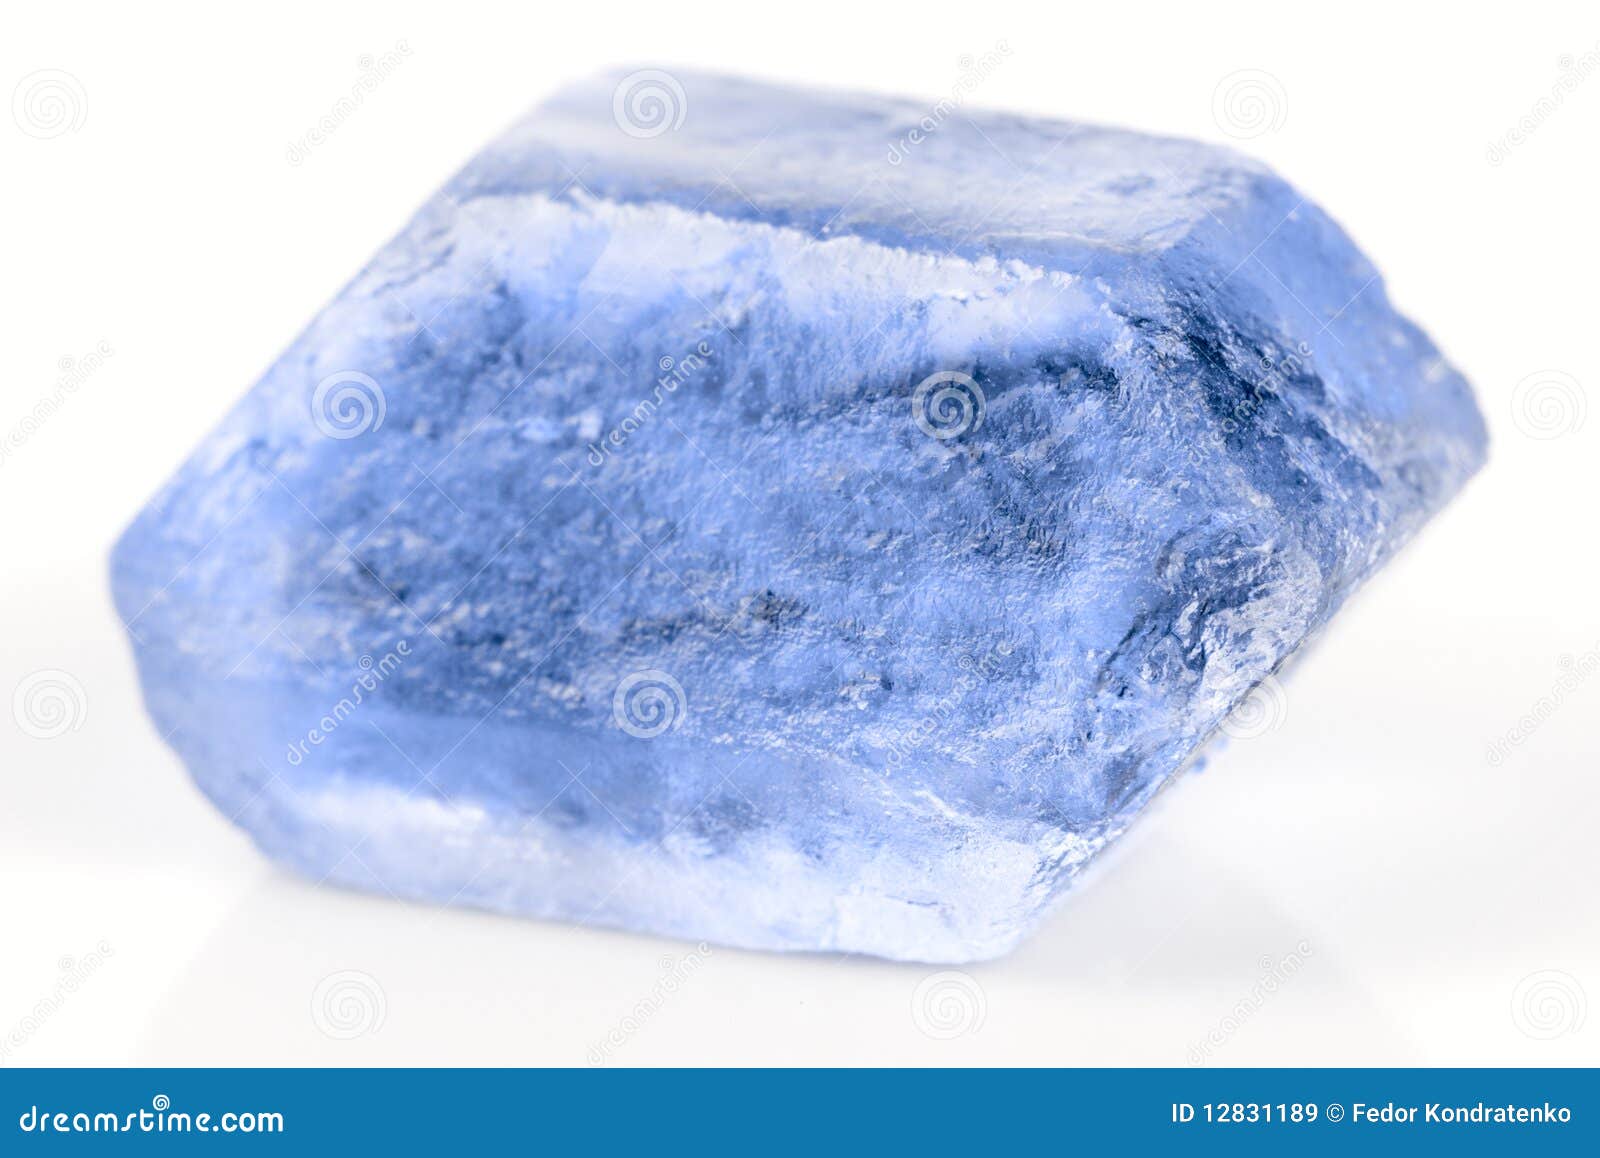 Kristal van blauw mineraal stock afbeelding. Image of ongelijk - 12831189